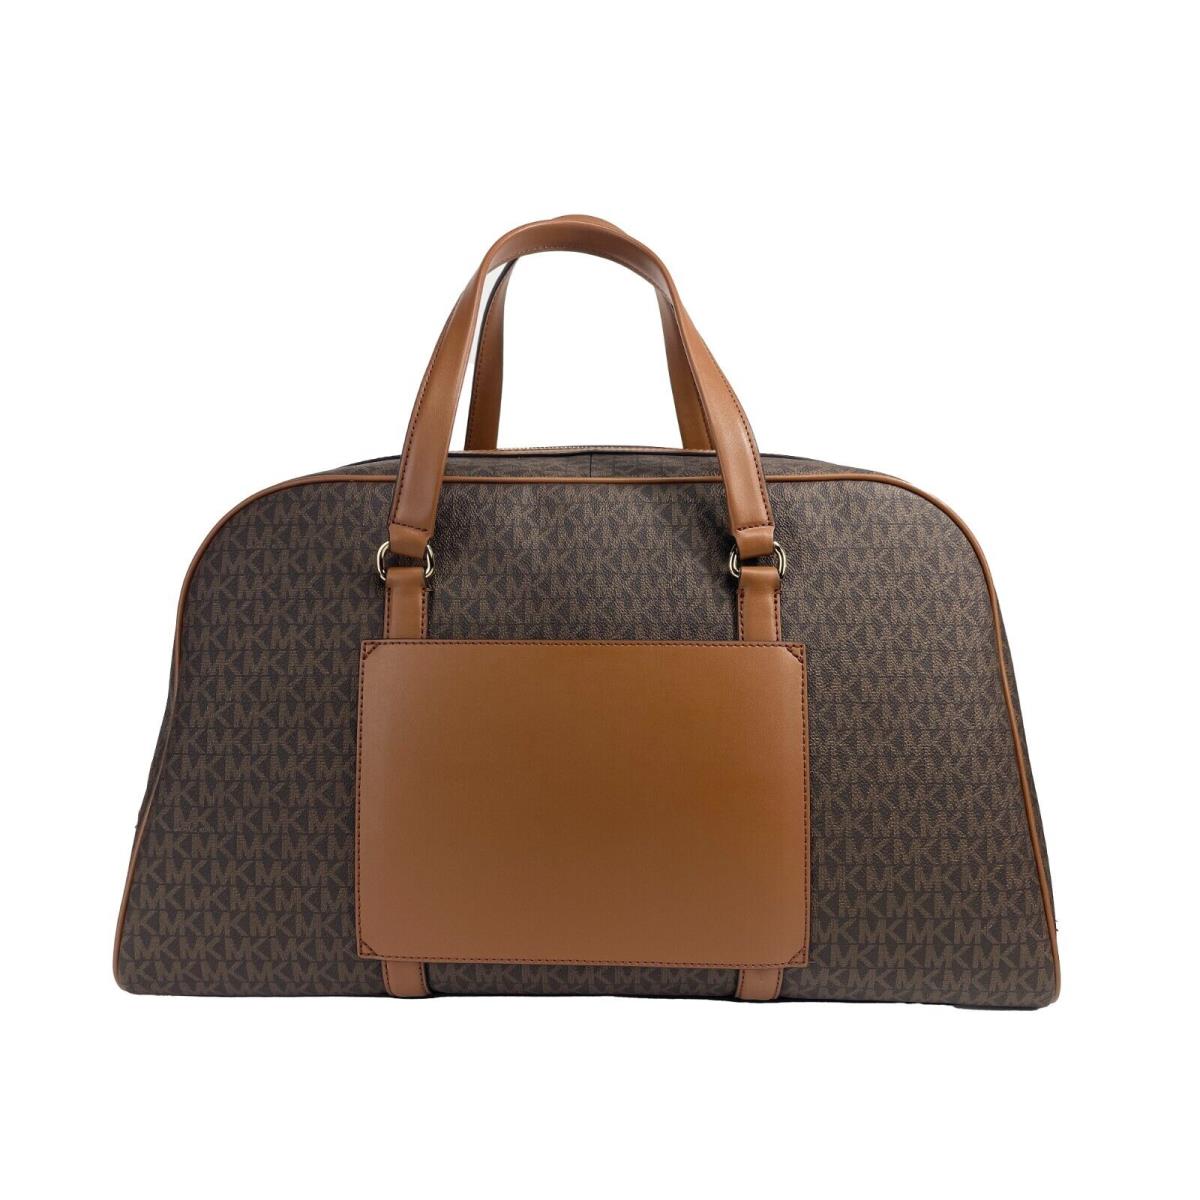 Michael Kors Travel Extra Large Brown Pvc Top Zip Weekender Luggage Bag